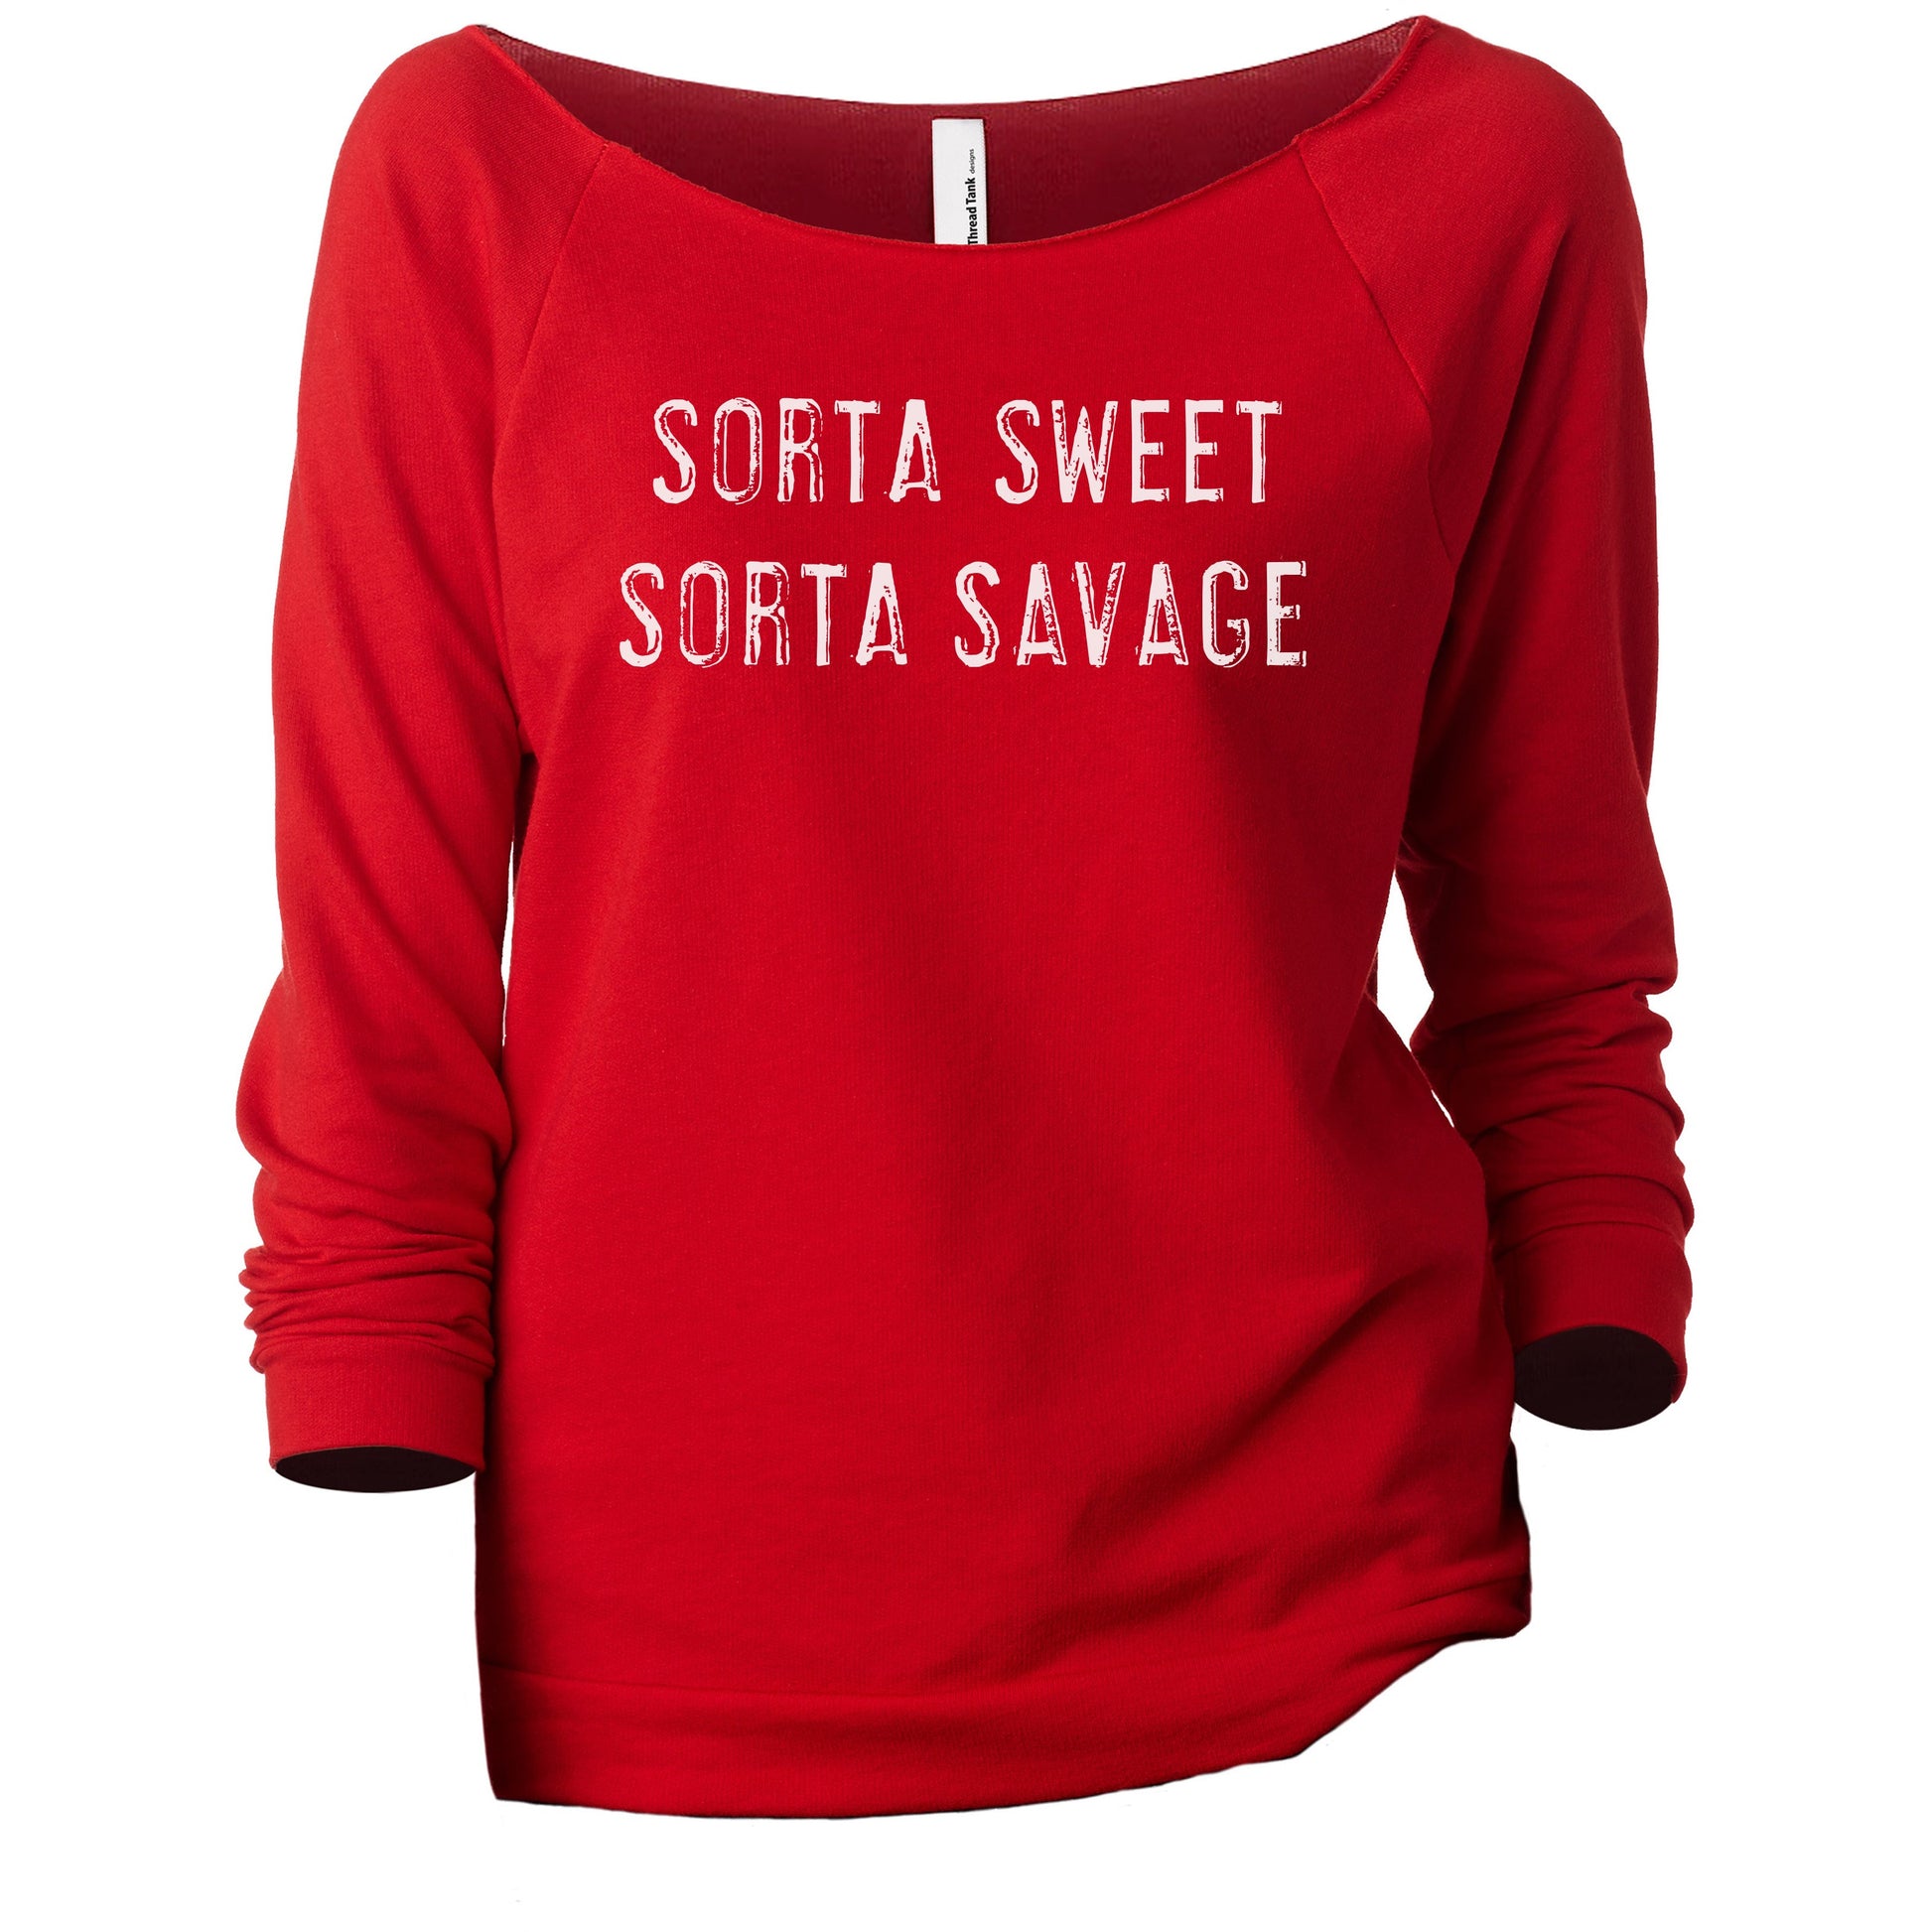 Sorta Sweet Sorta Savage Women's Graphic Printed Lightweight Slouchy 3/4 Sleeves Sweatshirt Red